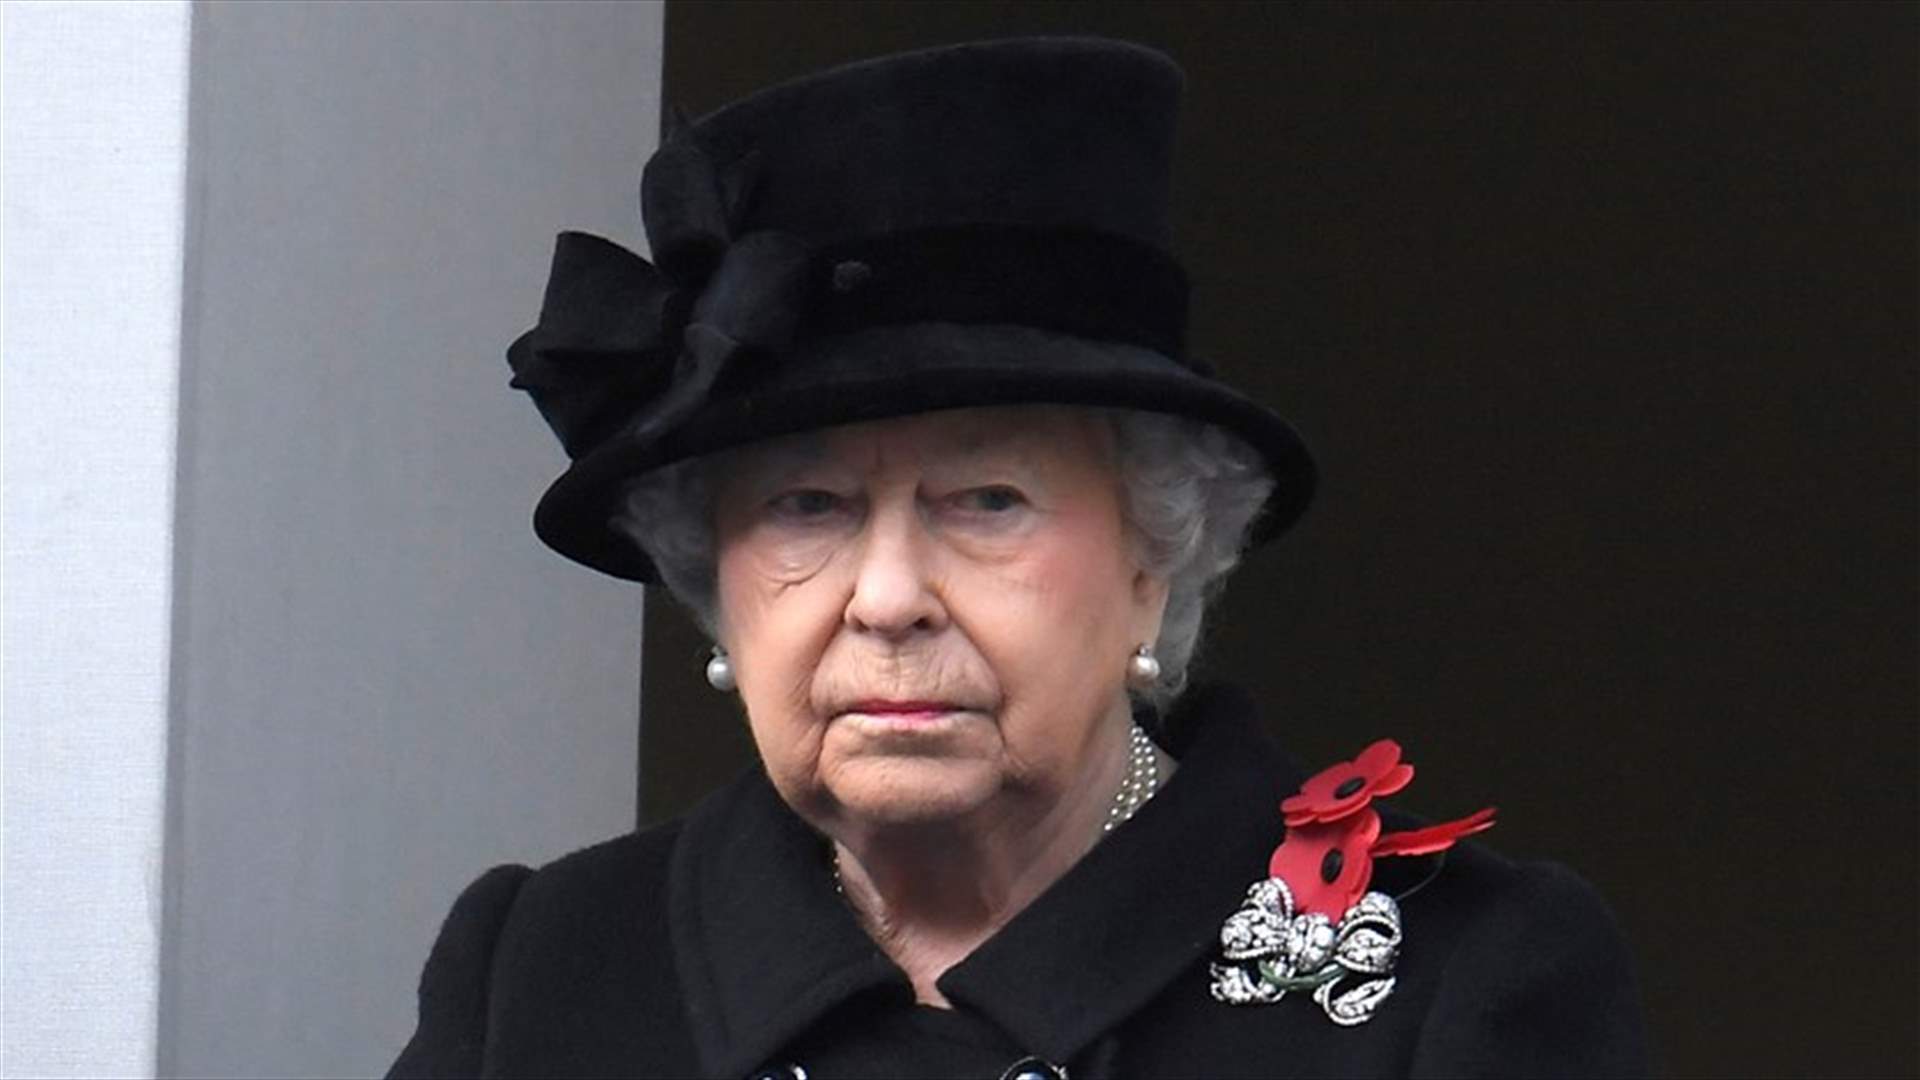 ملكة بريطانيا لعون: يسعدني أن أهنئكم باليوم الوطني